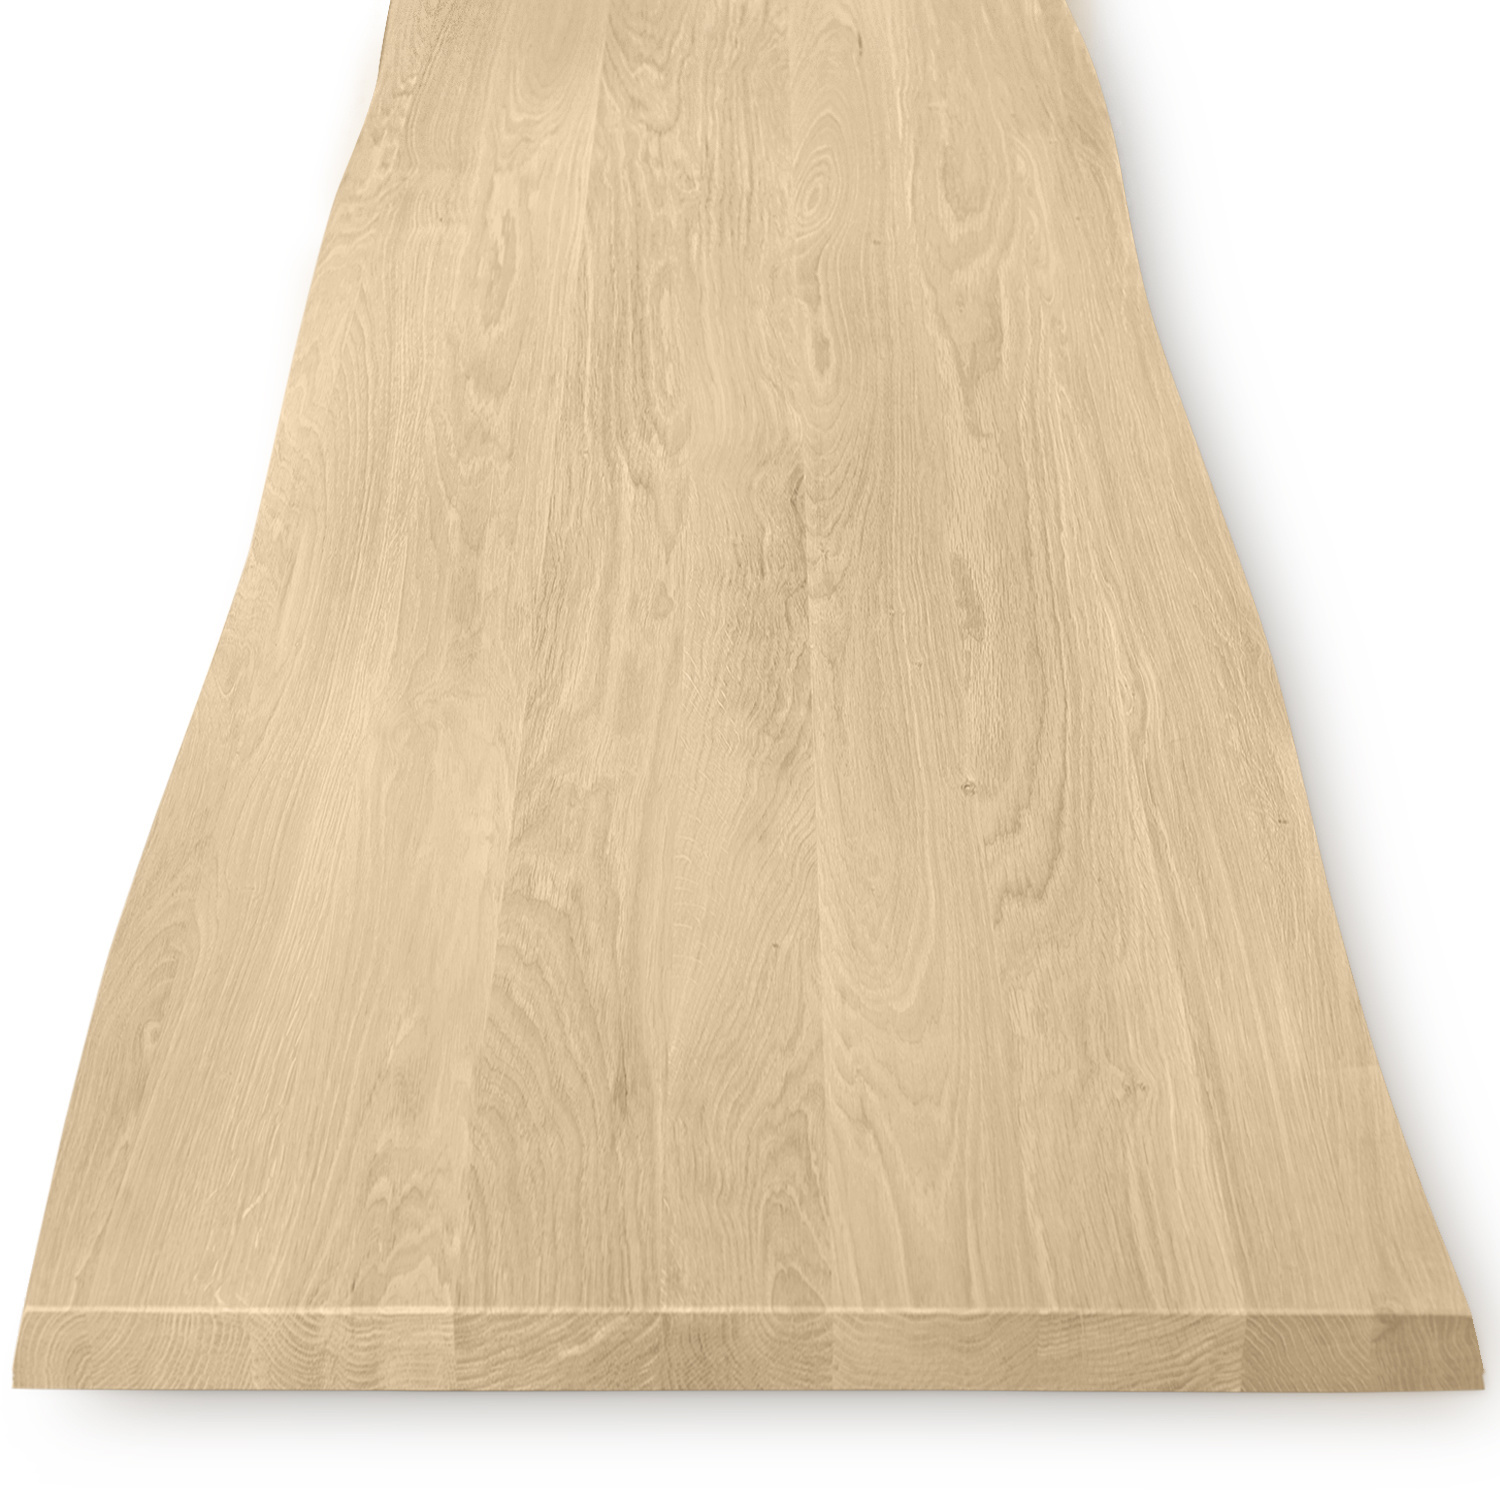  Eiken boomstam tafelblad - 4 cm dik (1-laag) - Diverse afmetingen - met boomstam rand / waankant look - foutvrij Europees eikenhout - met brede lamellen (circa 10-12 cm) - verlijmd kd 8-12%